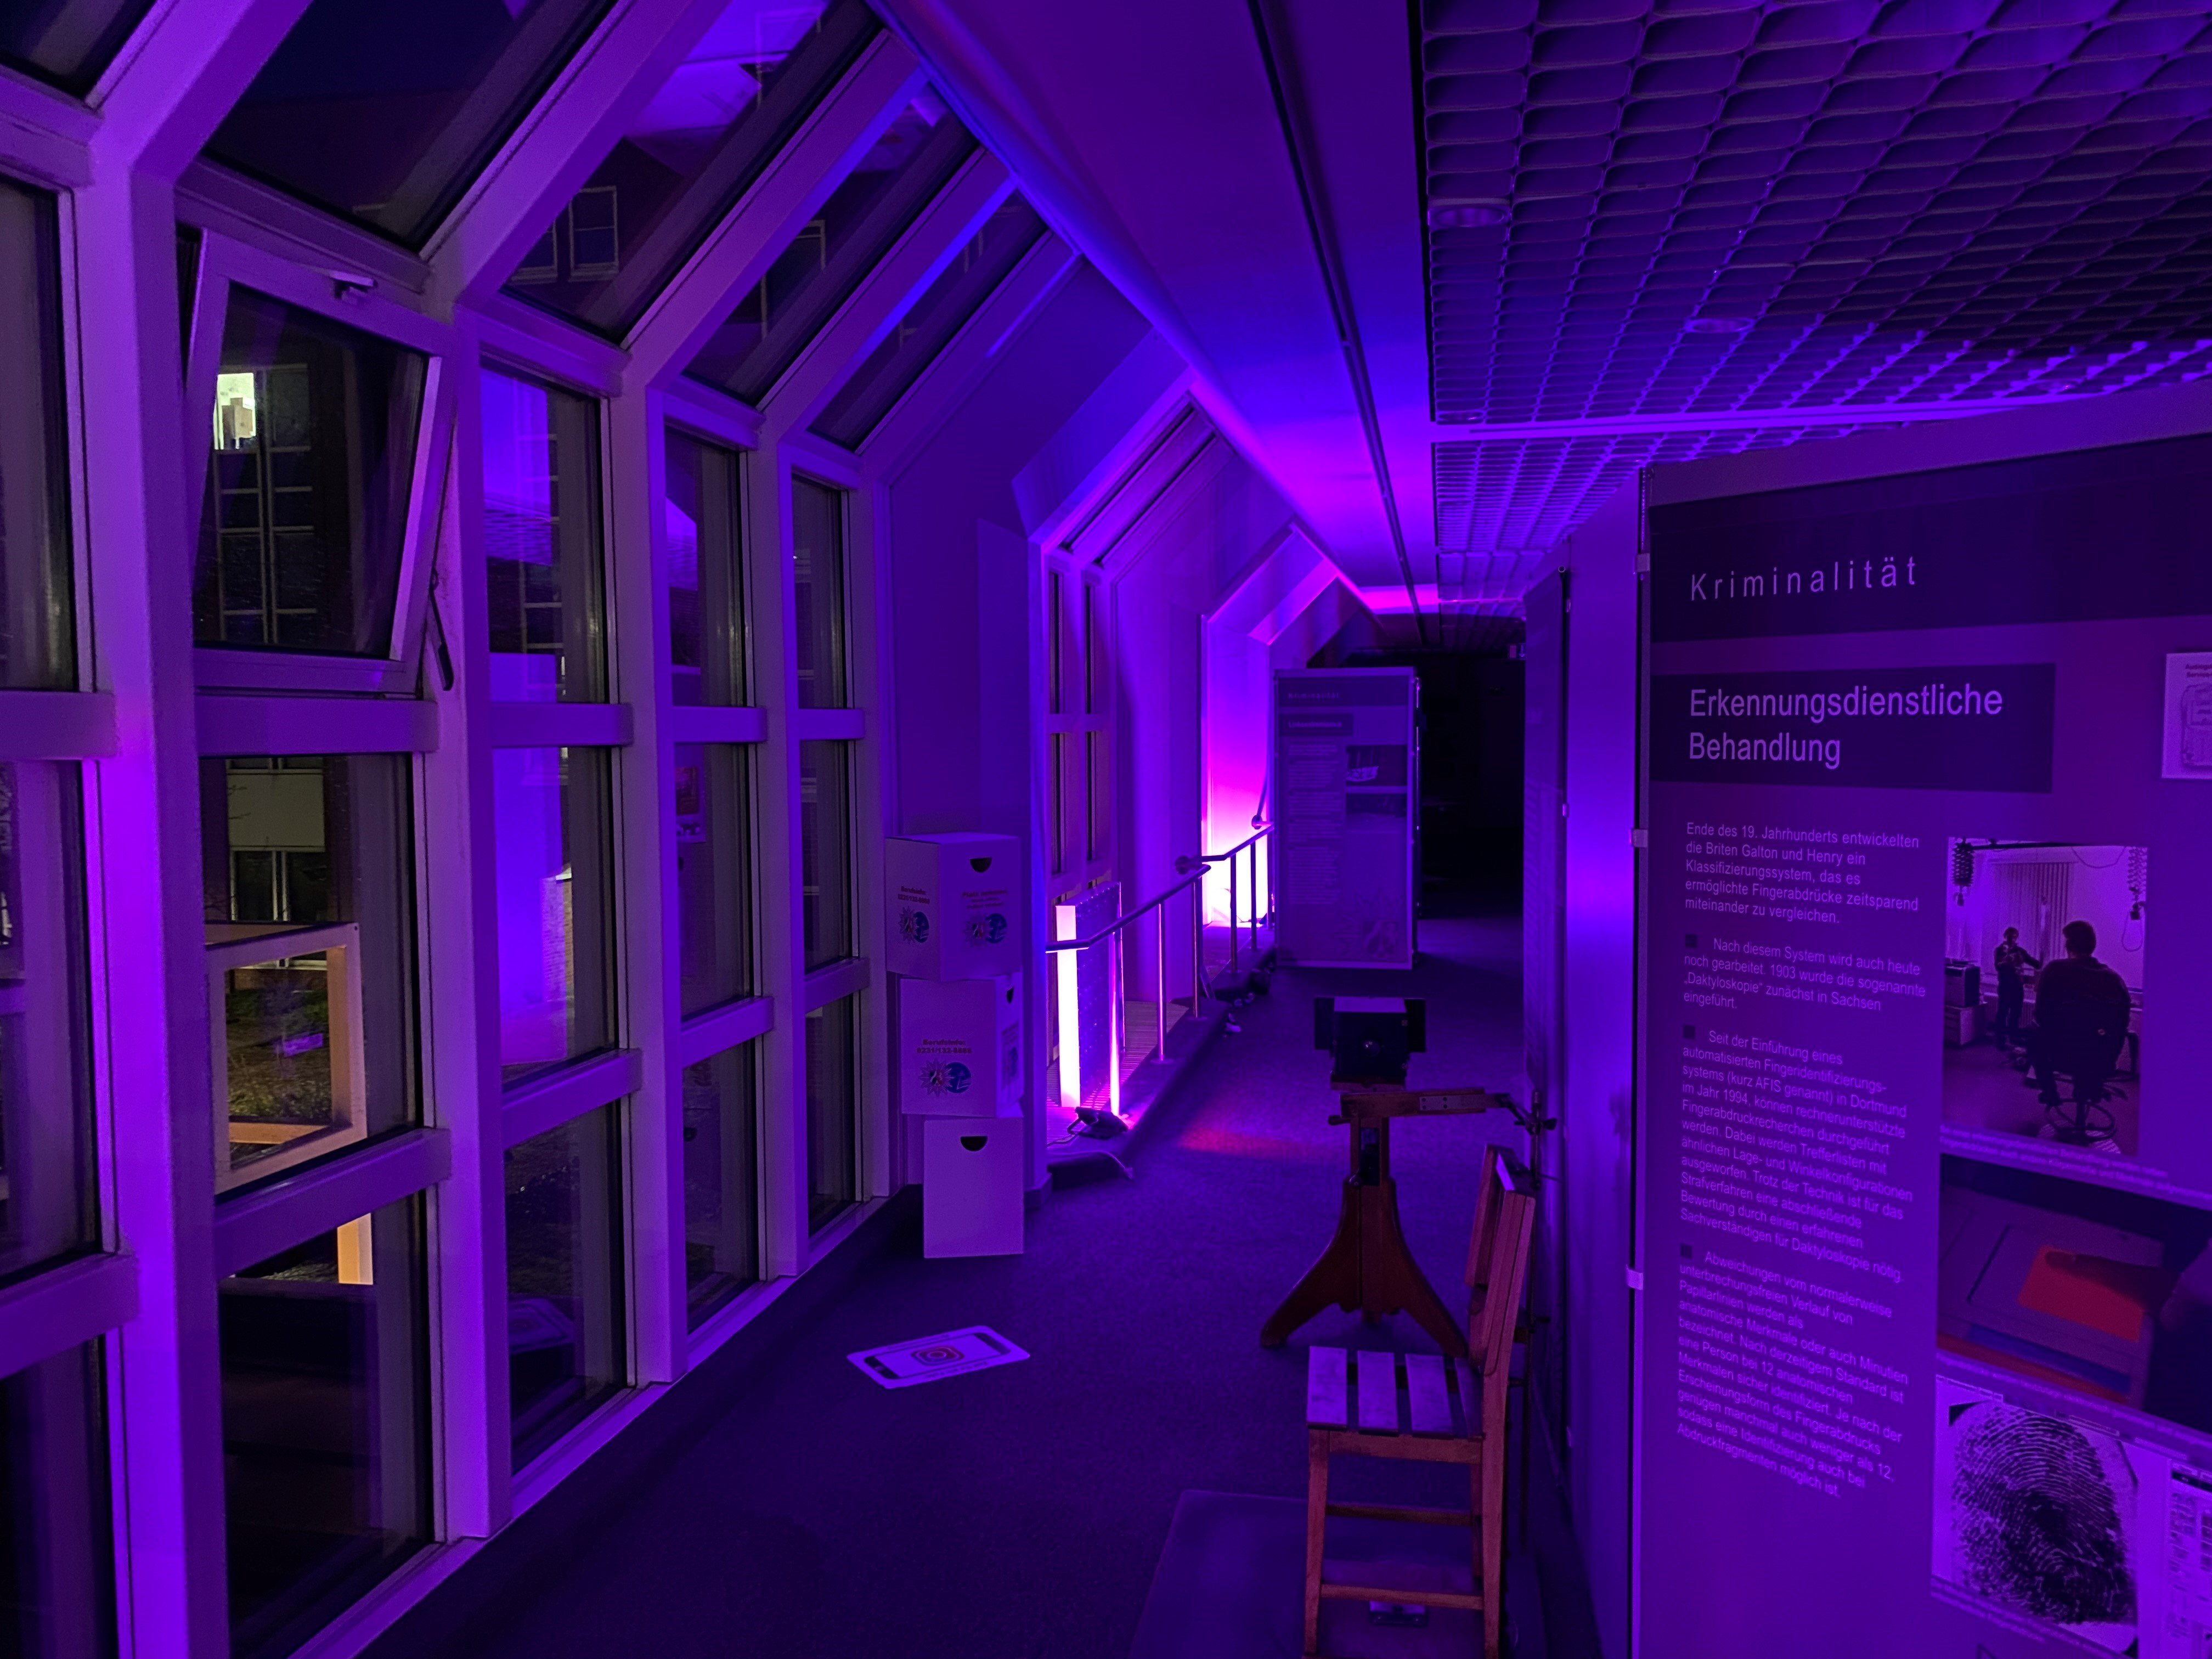 Polizeiausstellung 110 in violettem Licht